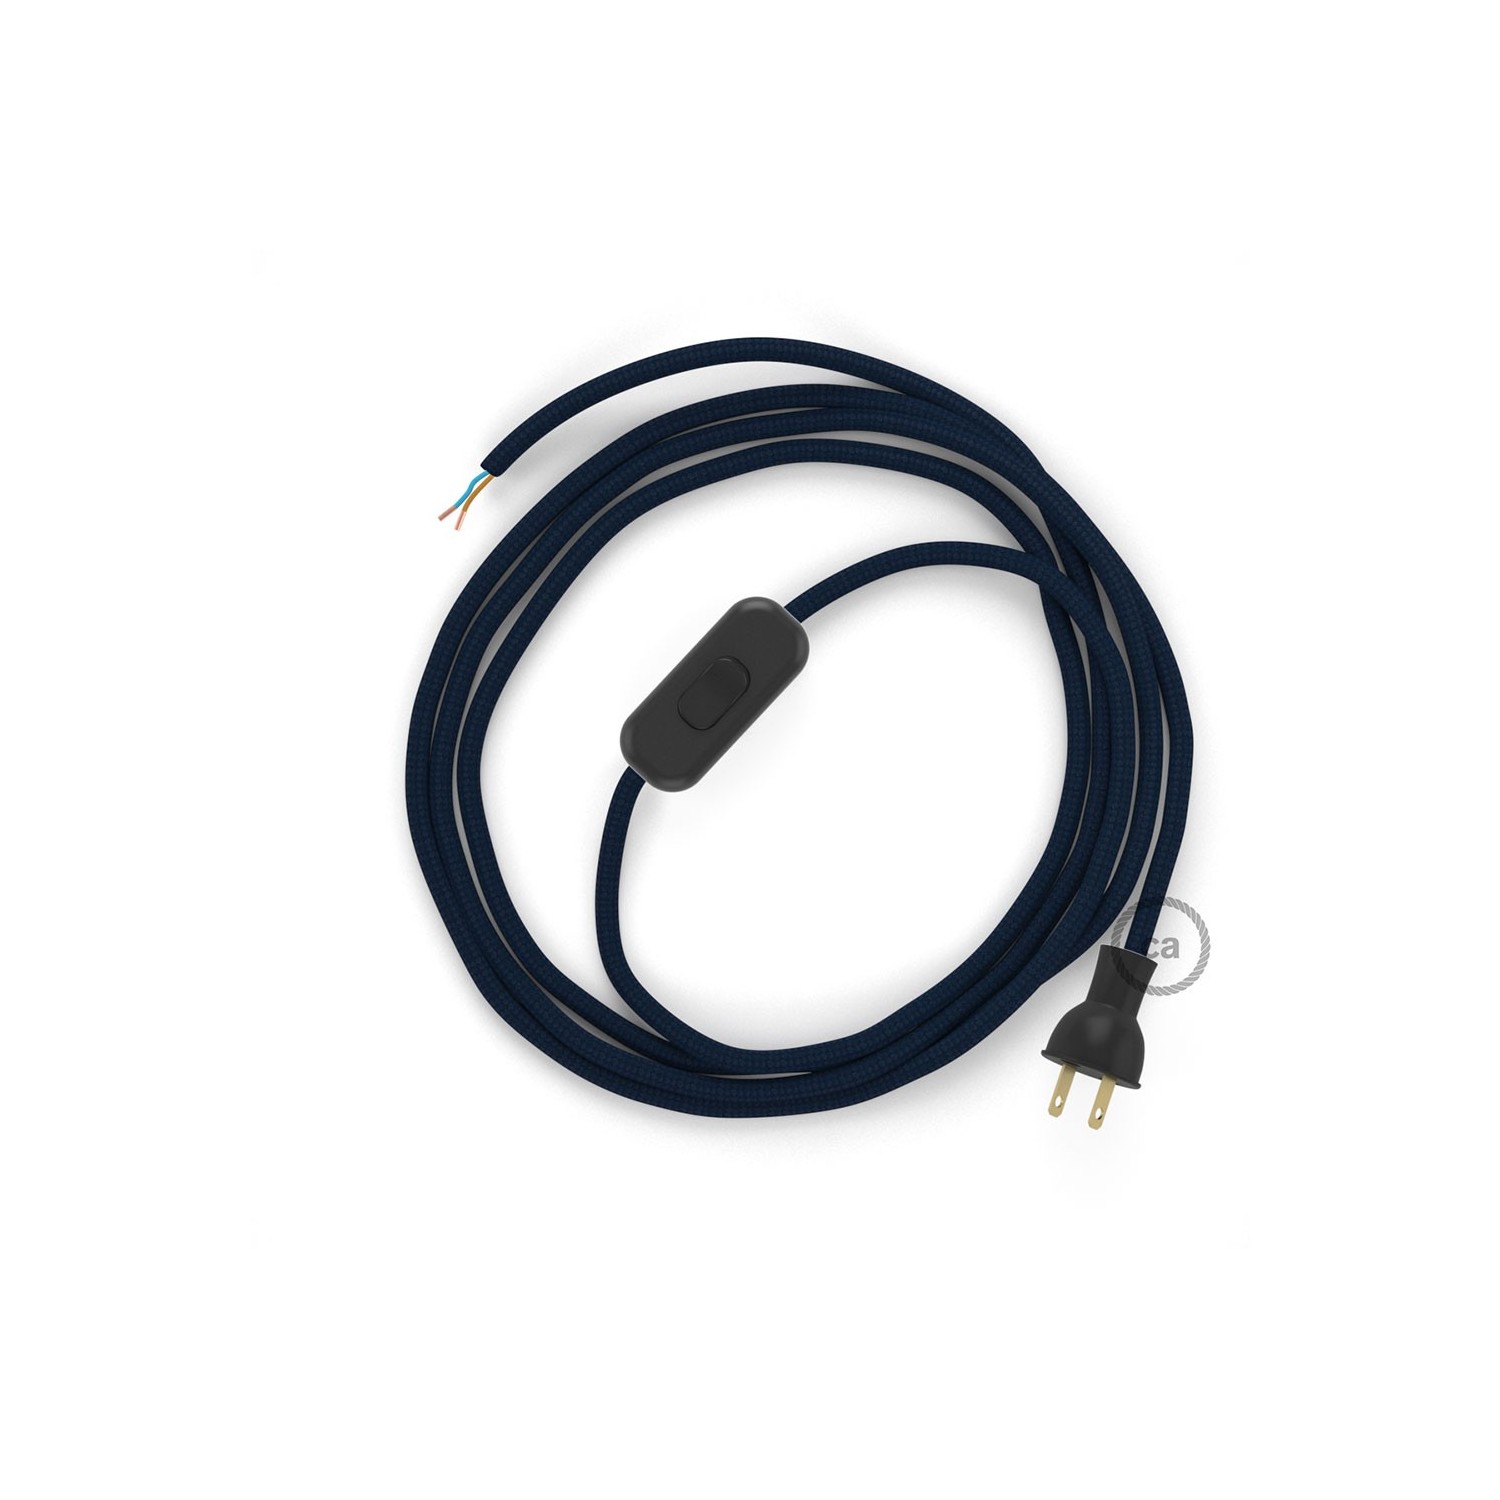 Cableado para lámpara de mesa, cable RM20 Rayón Azul Marino 1,8 m. Elige el color de la clavija y del interruptor!